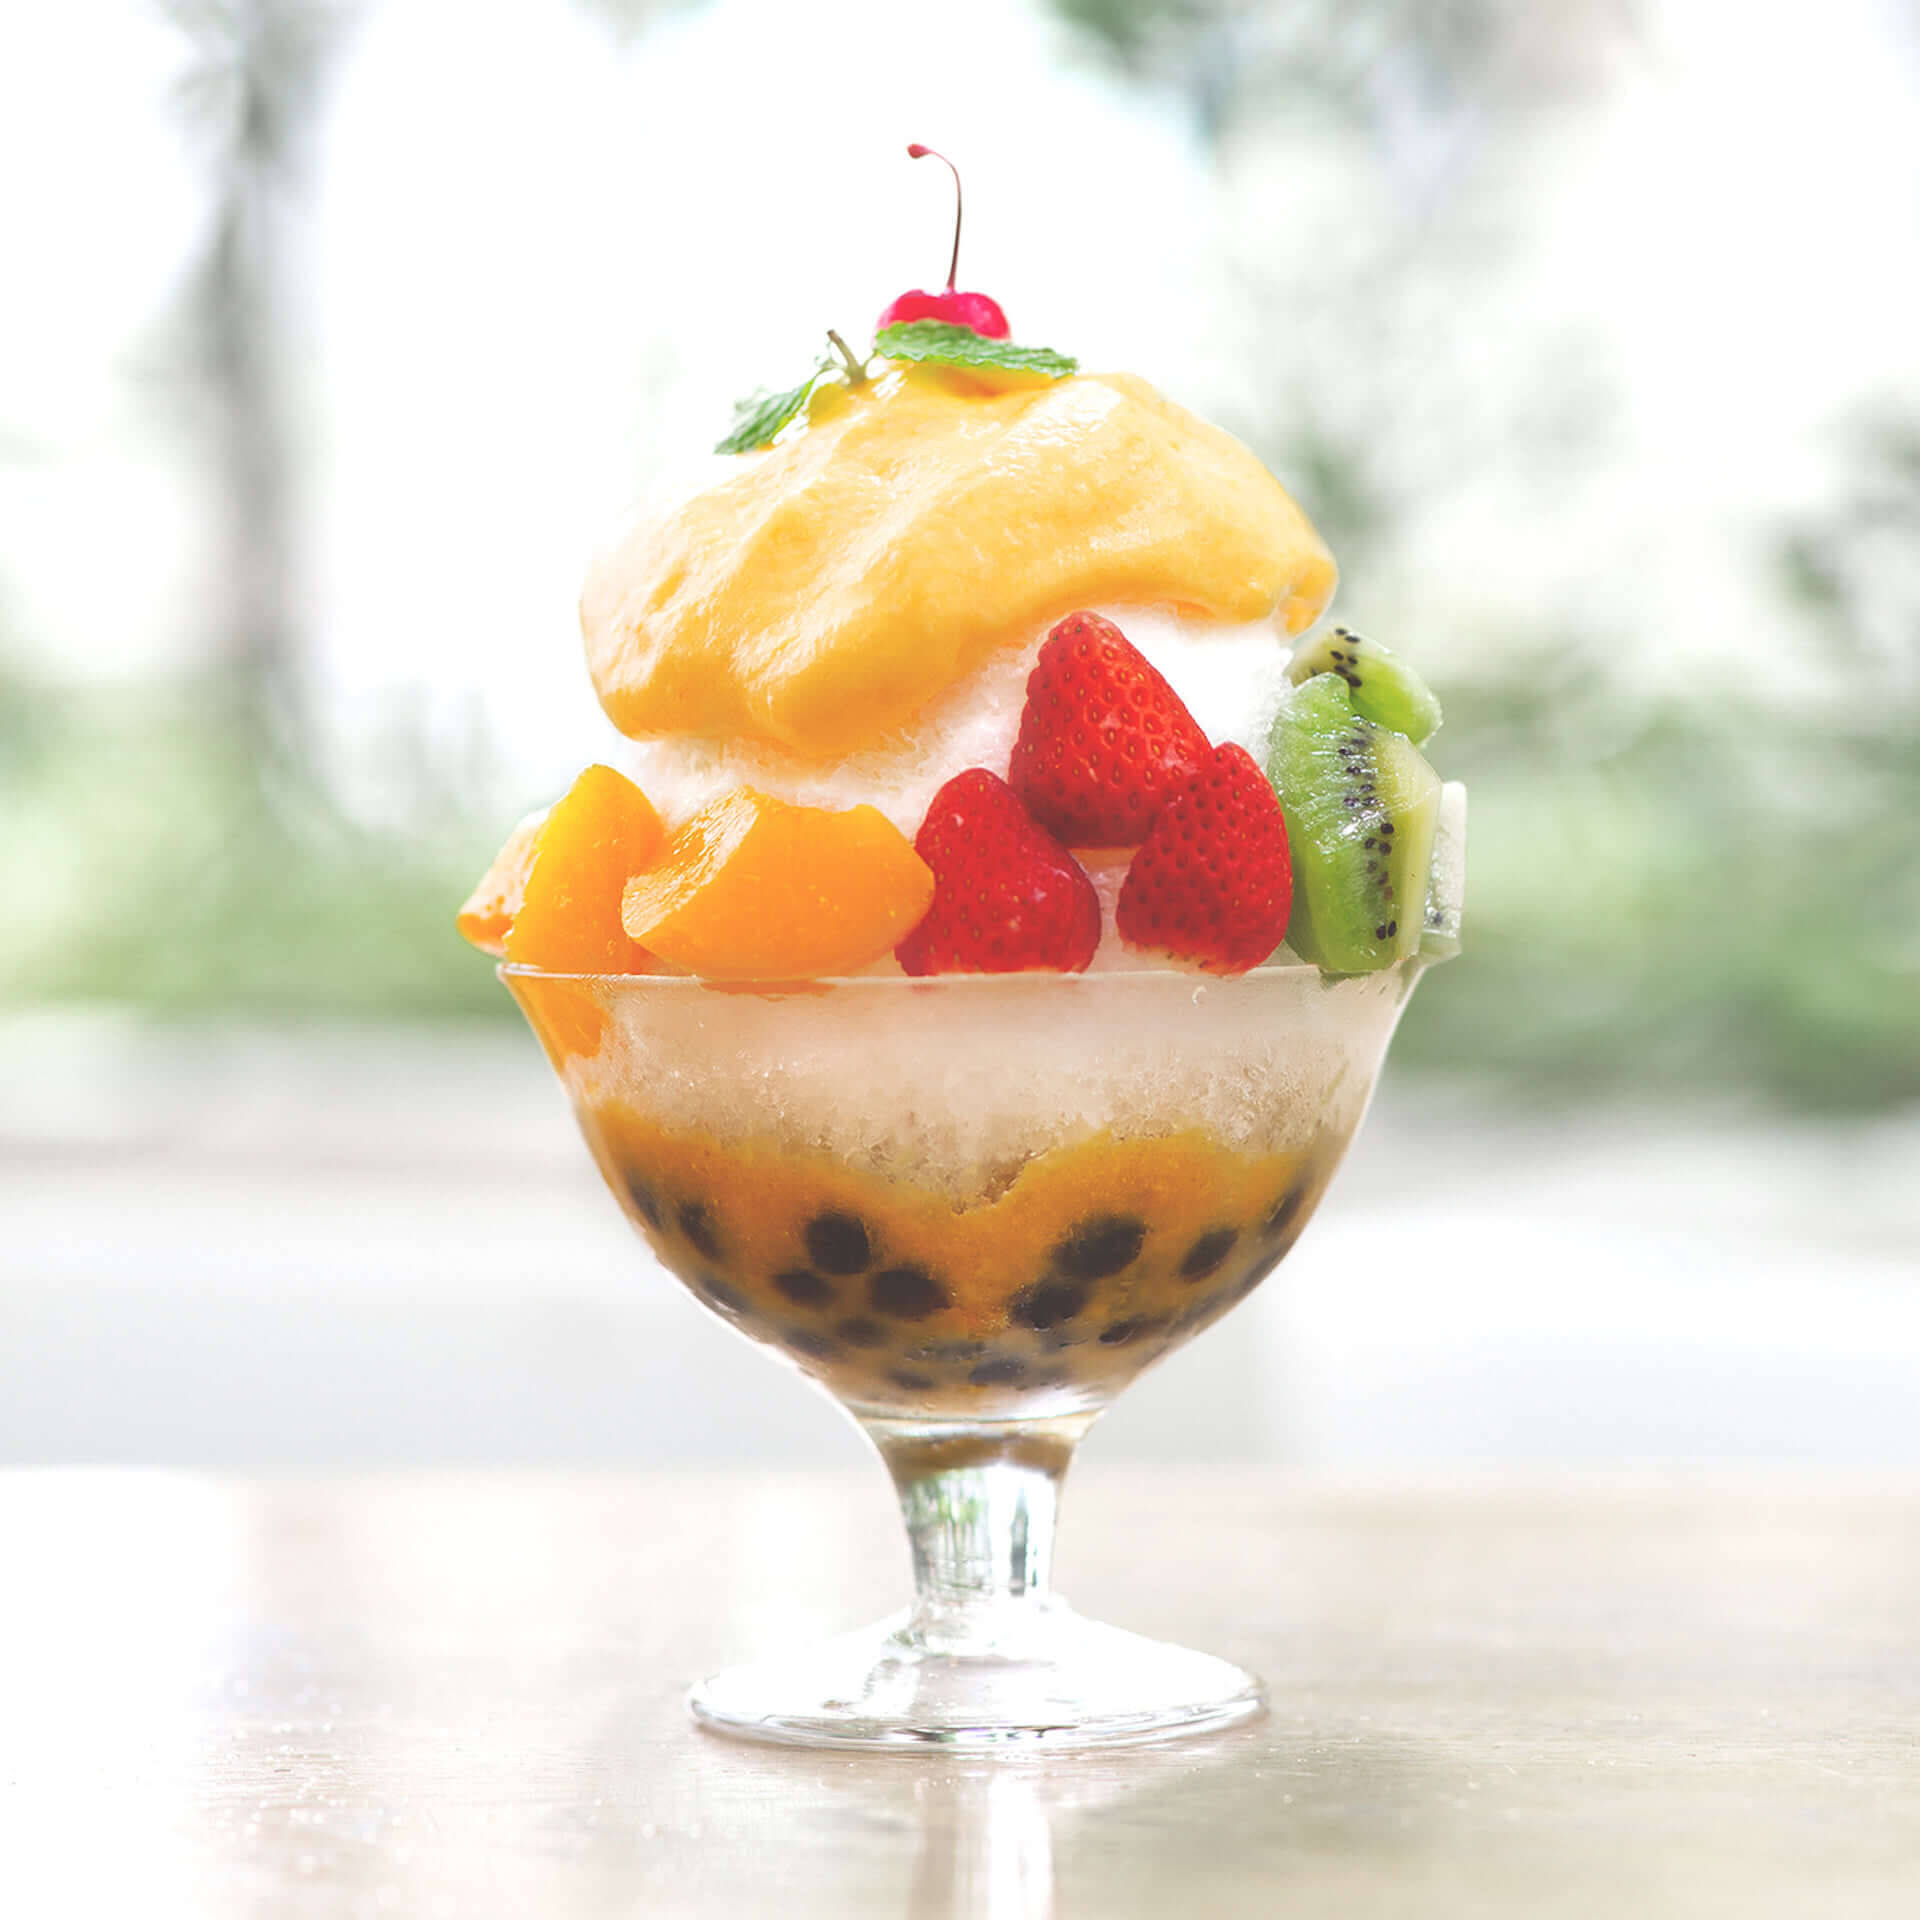 大阪名物ミックスジュース×タピオカかき氷が新登場！5種のフルーツがトッピングされた「ふわっとタピオカかき氷」